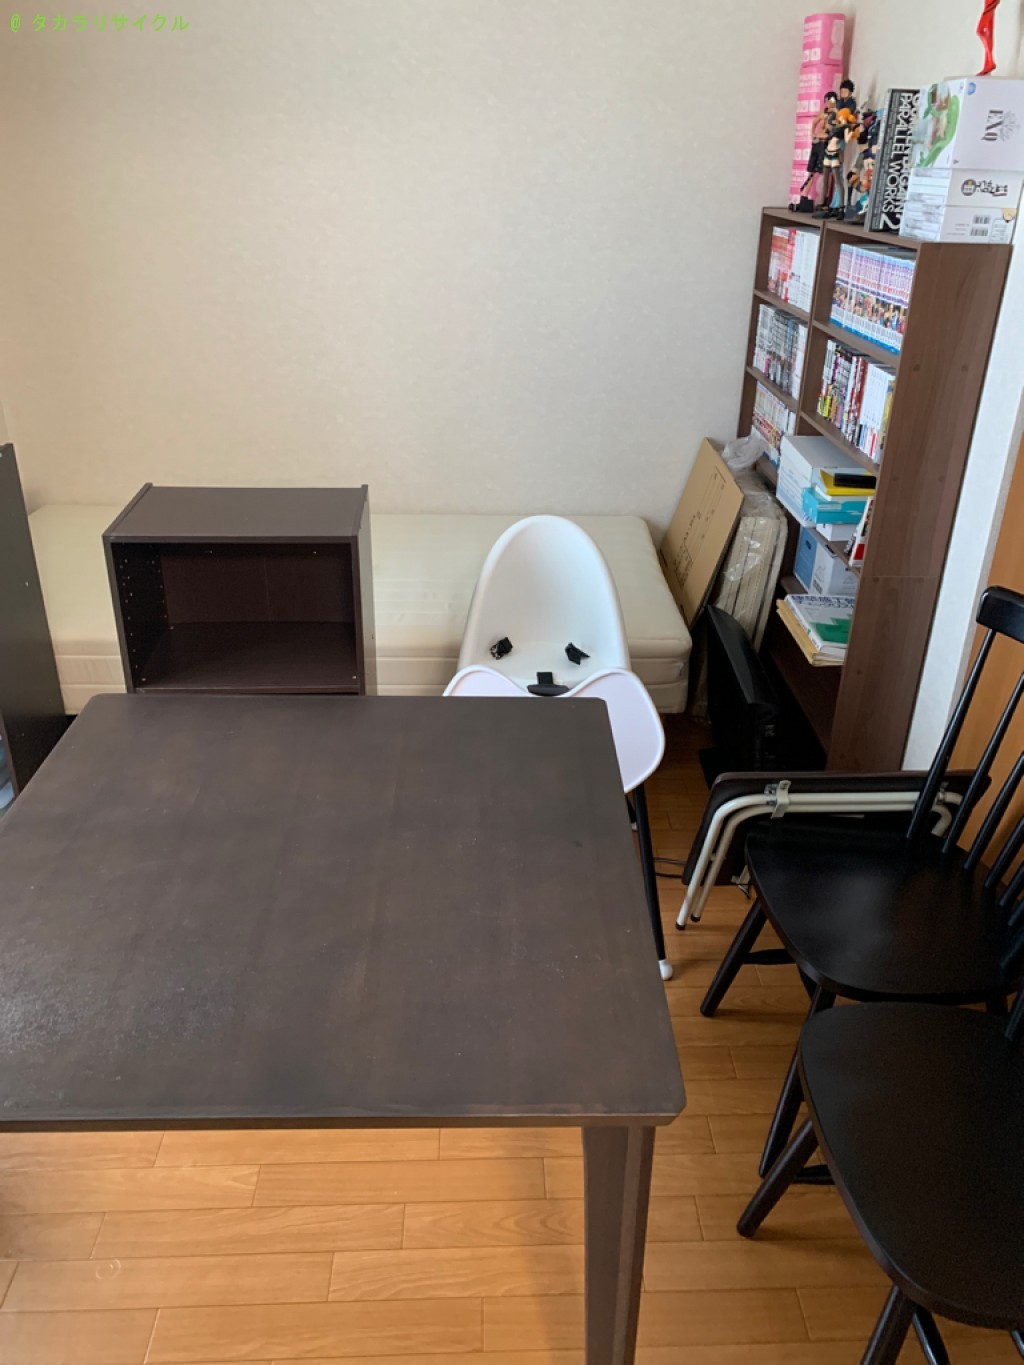 【甲賀市甲賀町】ダイニングテーブル・椅子セット、ベッド、三段ボックスなどの処分・回収のご依頼者さま